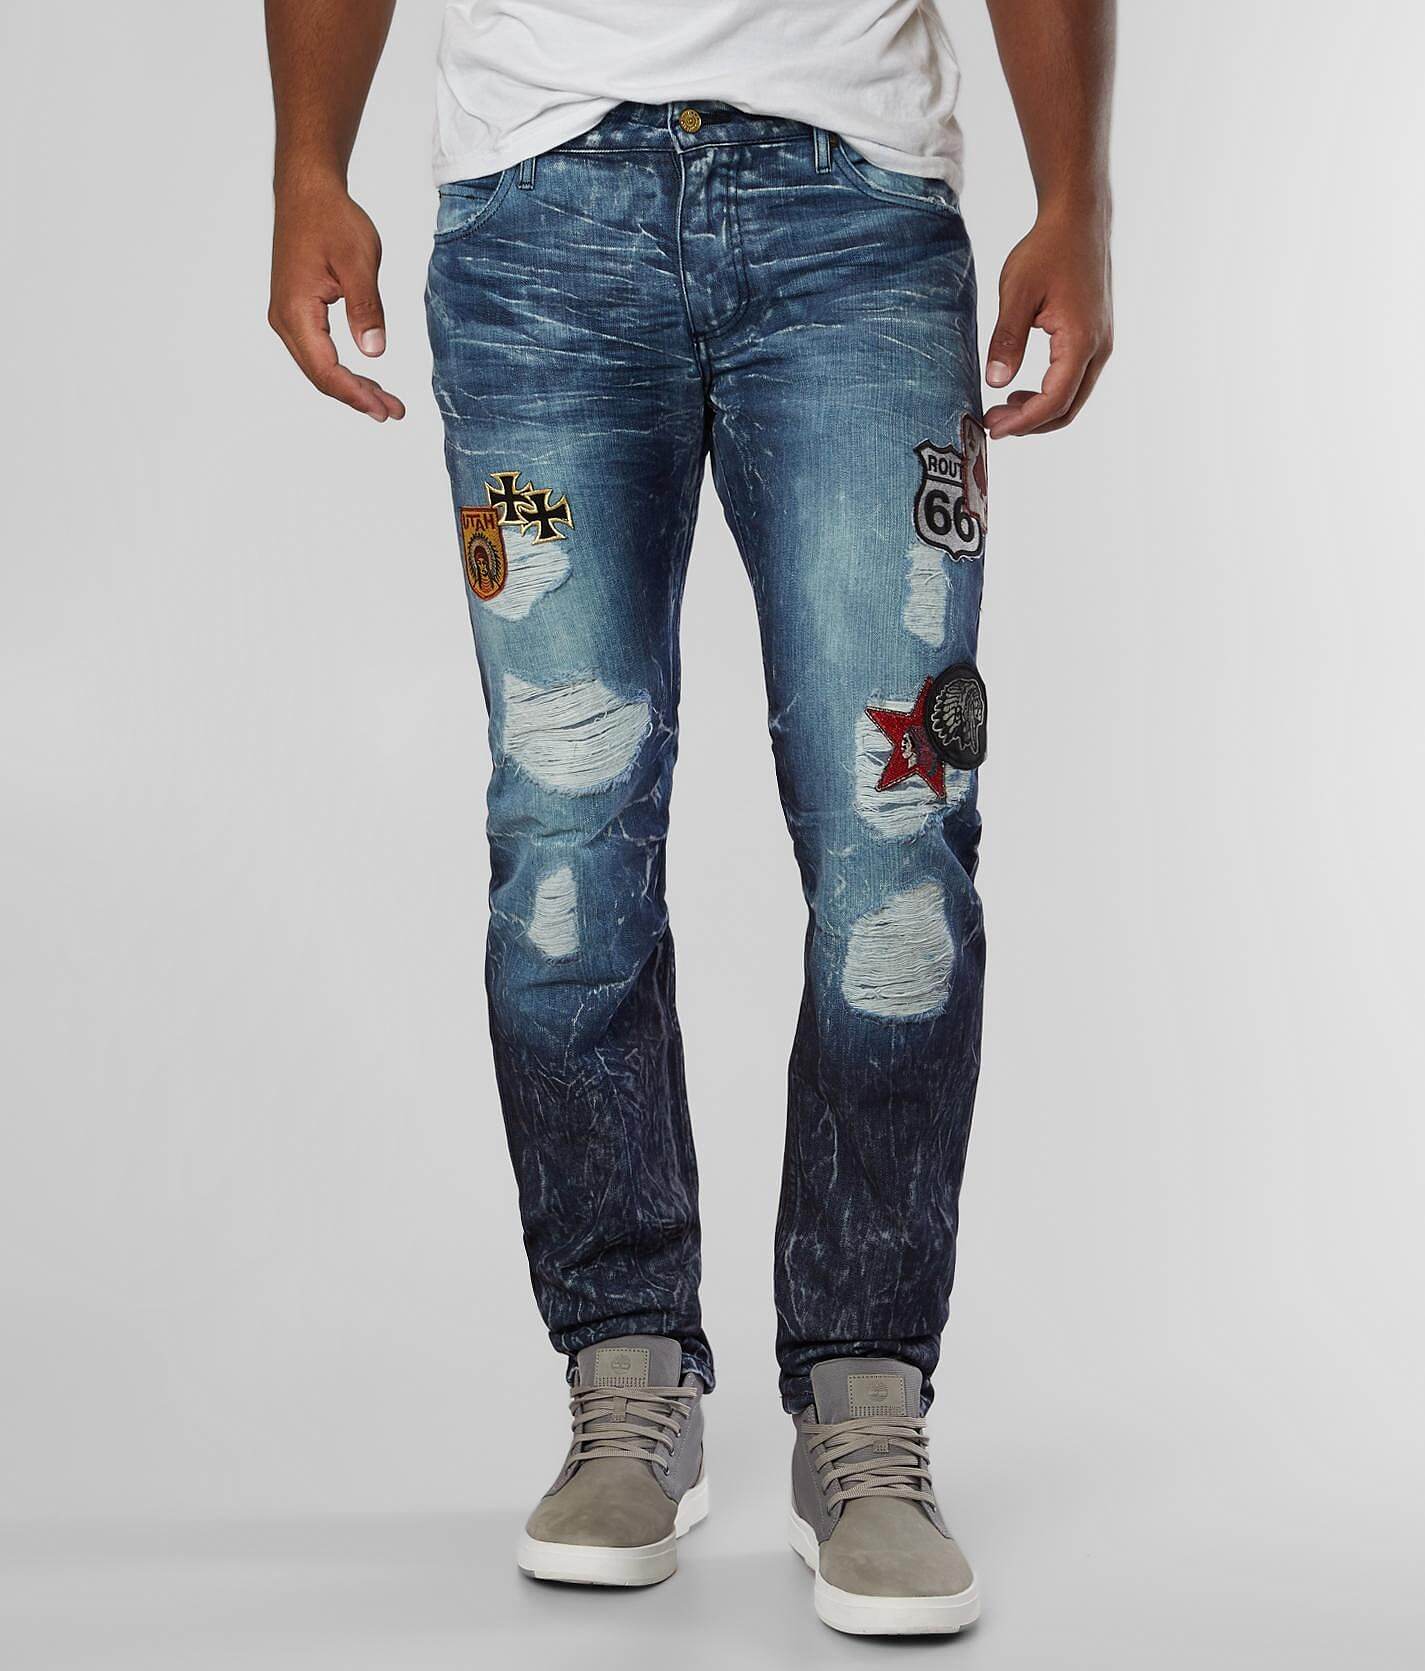 robin jeans online